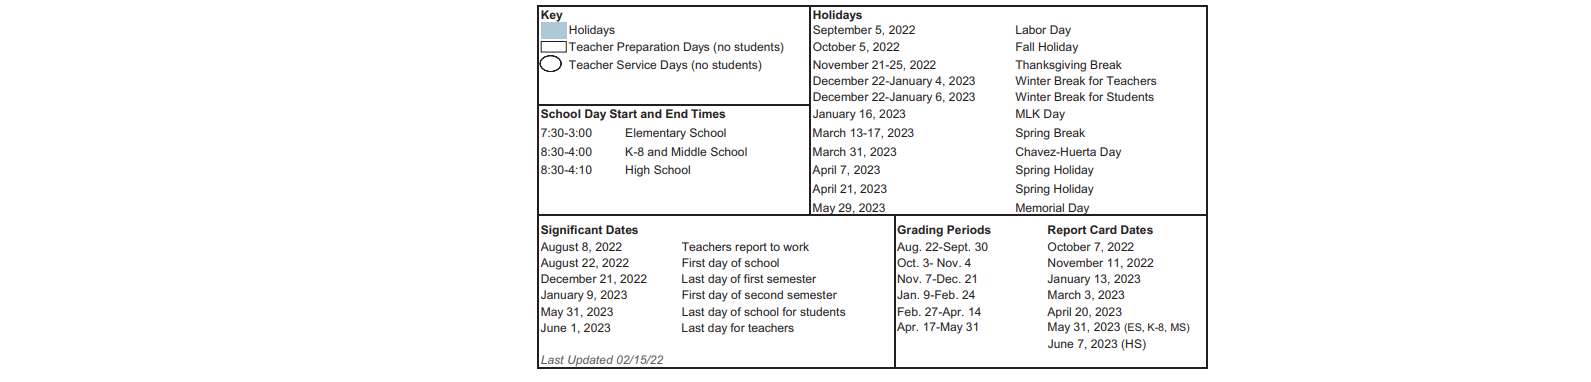 District School Academic Calendar Key for Scroggins Elementary